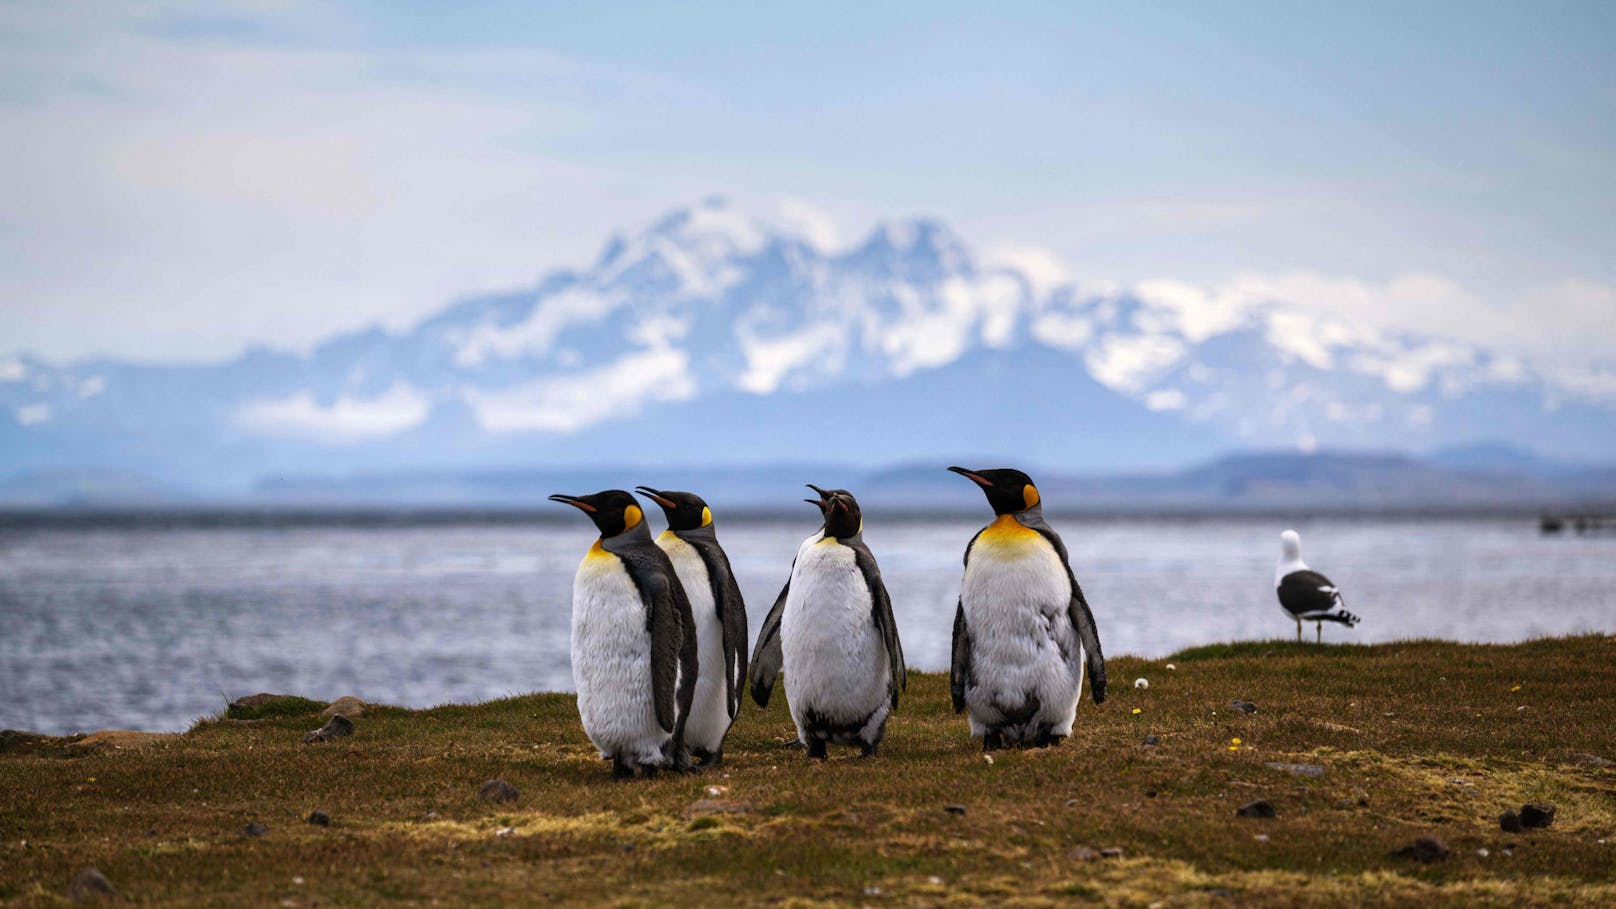 <strong>Antarktis:</strong> Diese Destination steht vermutlich nicht bei vielen auf der To-Do-Liste. Obwohl die Antarktis nicht wie andere Orte von Touristinnen und Touristen überrannt wird, waren es zwischen den Jahren 2019 und 2020 rund 70.000 Menschen. Das Hauptproblem dabei ist, dass sich die Besuche auf die antarktische Halbinsel konzentrieren, den Teil der Antarktis, der die schnellste Erwärmung und den stärksten Rückgang der Tierwelt erlebt hat.